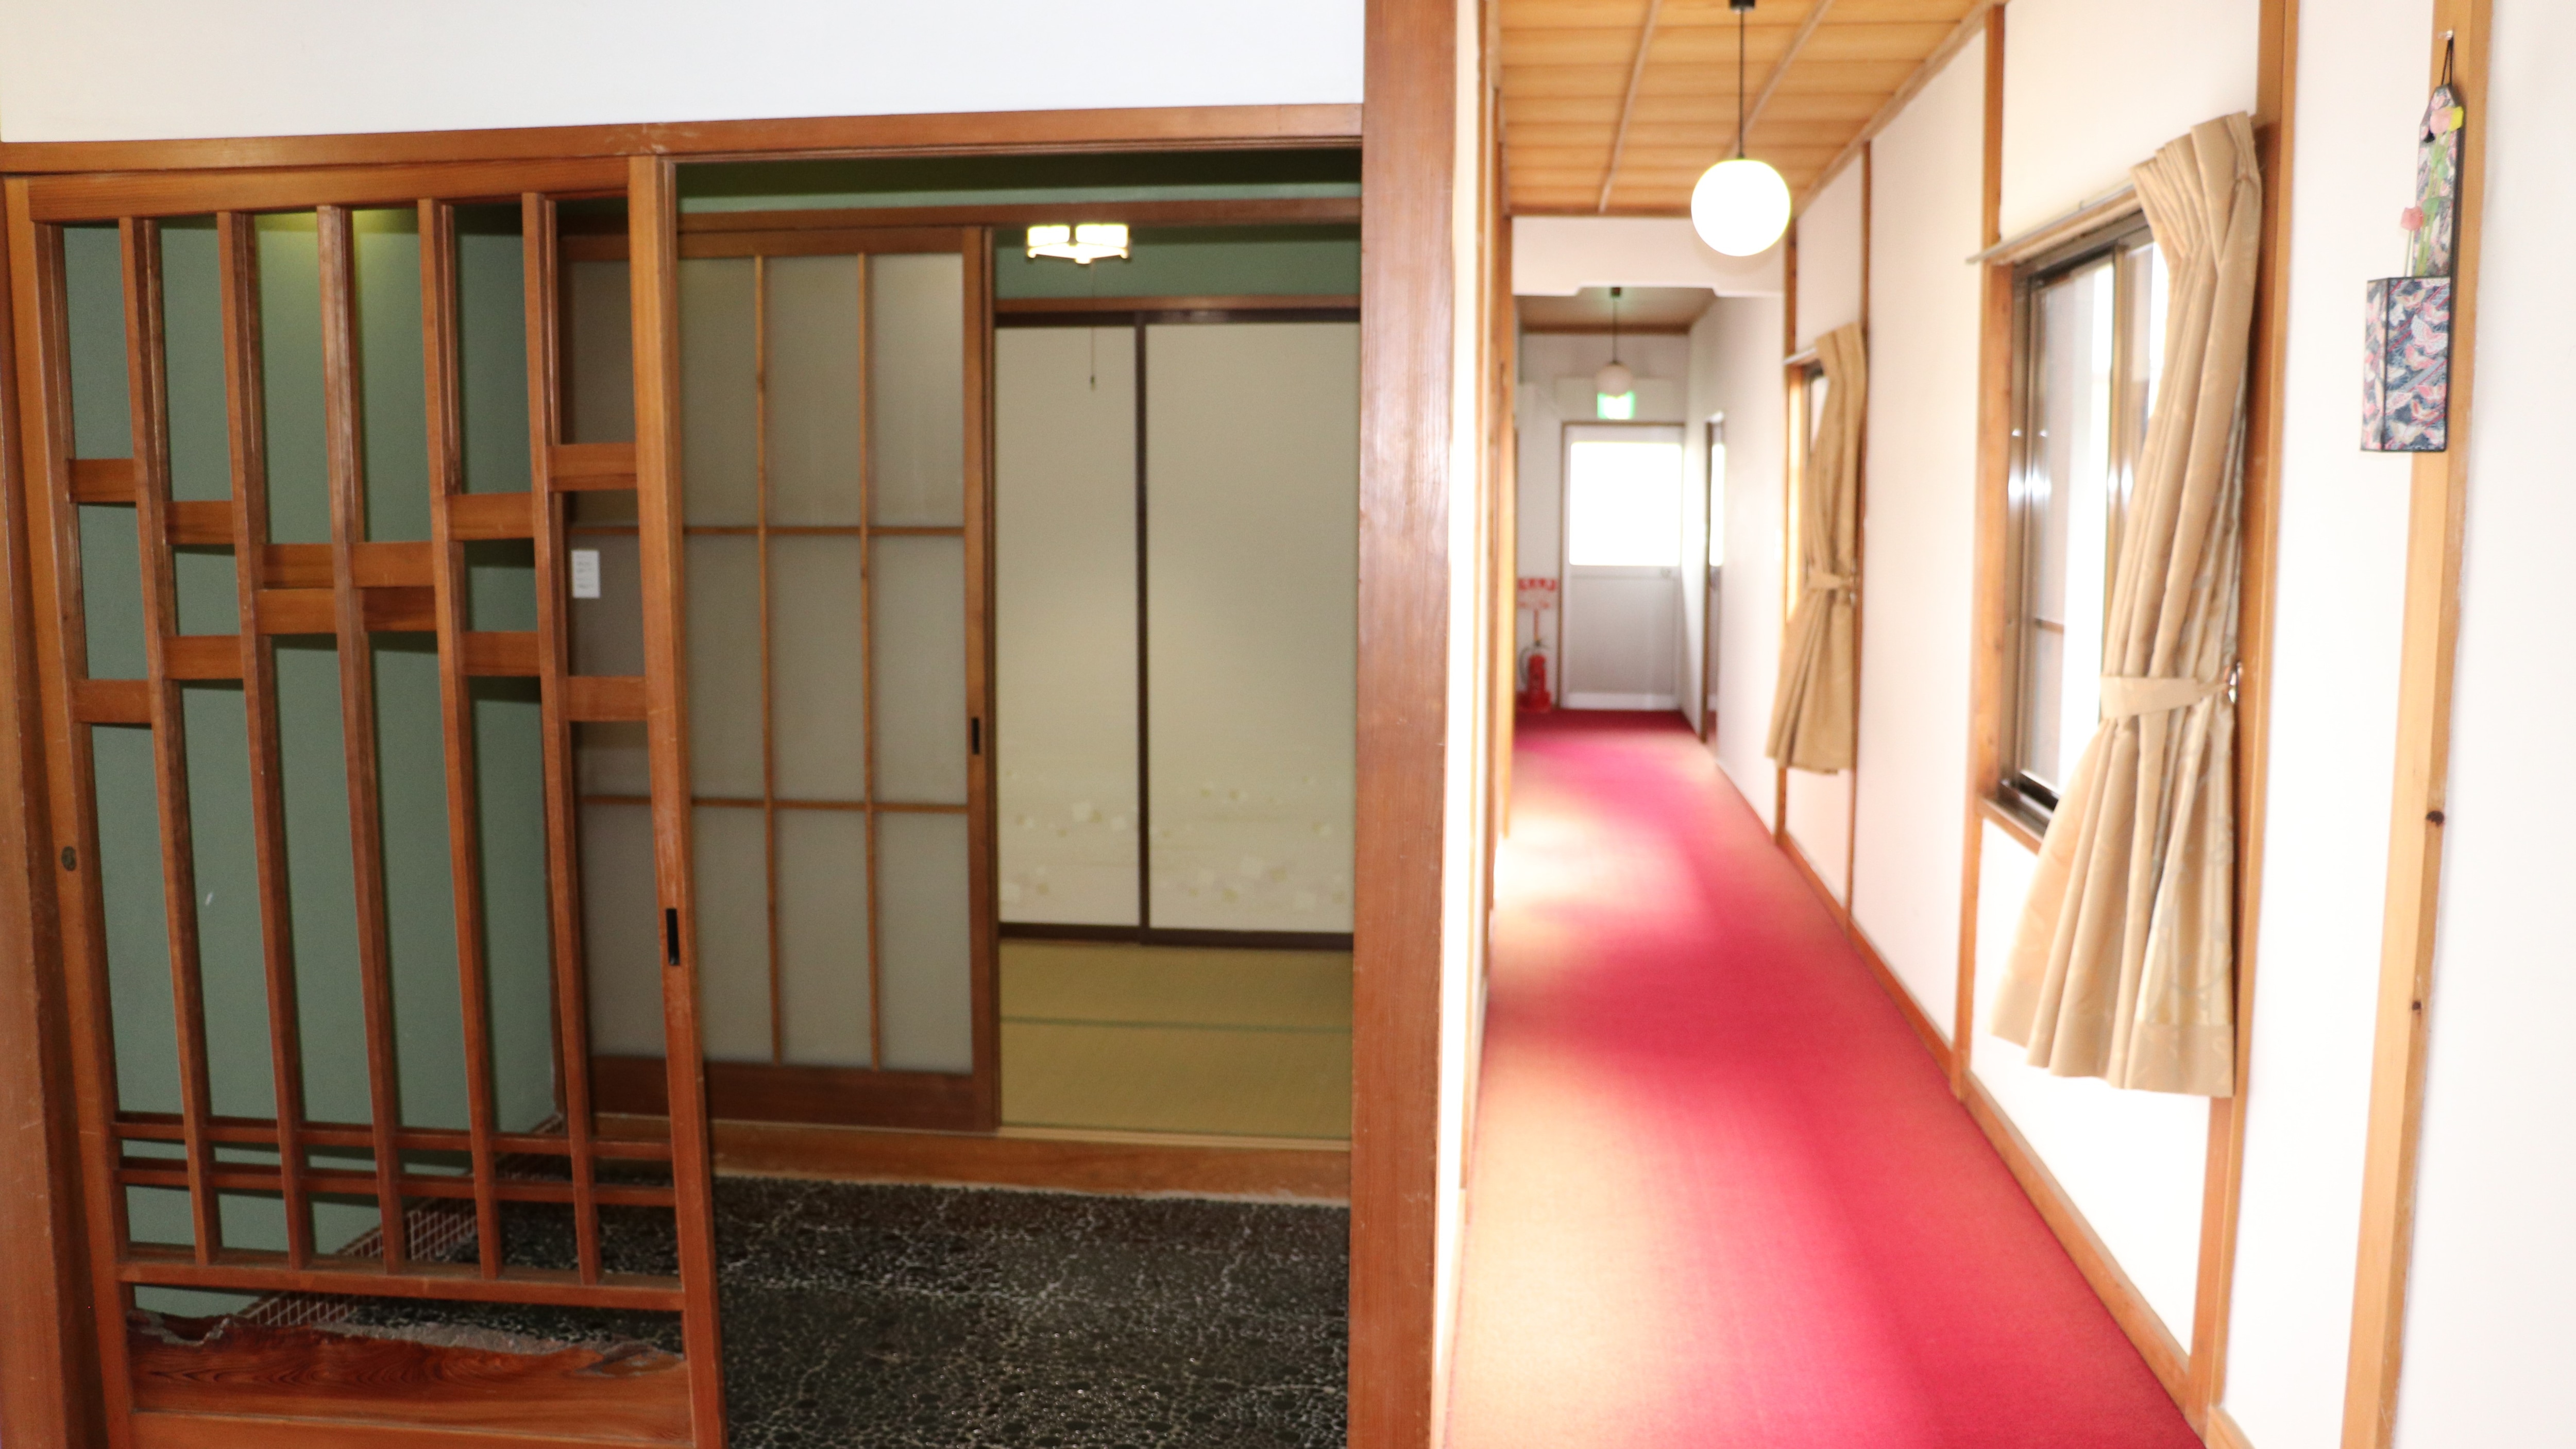 ชั้น 2 ห้องสไตล์ญี่ปุ่น 8 เสื่อทาทามิ ทางเข้า